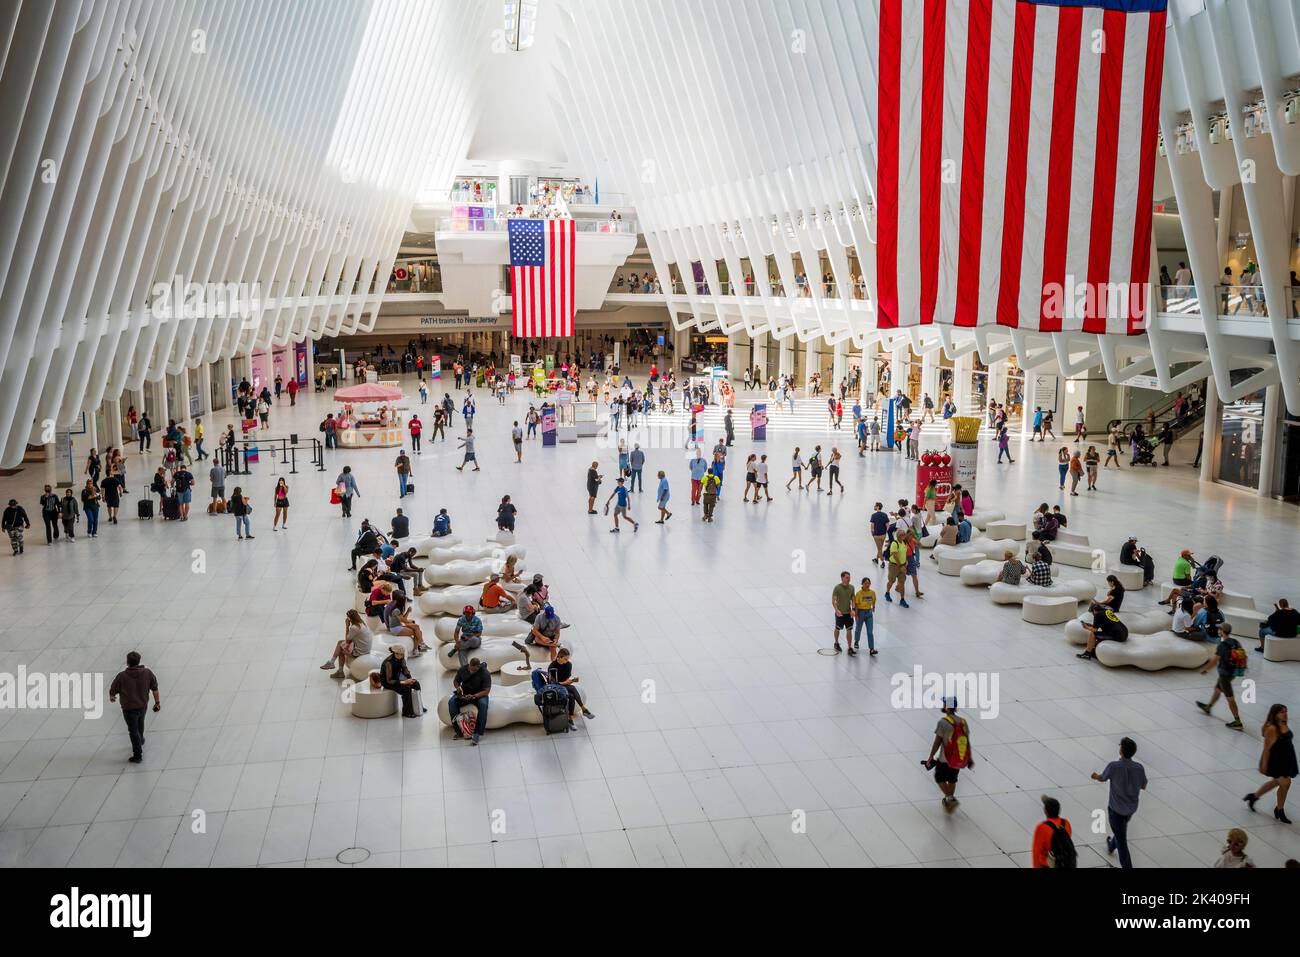 Intérieur de la station World Trade Center (PATH), également connue sous le nom d'Oculus, conçu par l'architecte Santiago Calatrava, Manhattan, New York, Etats-Unis Banque D'Images